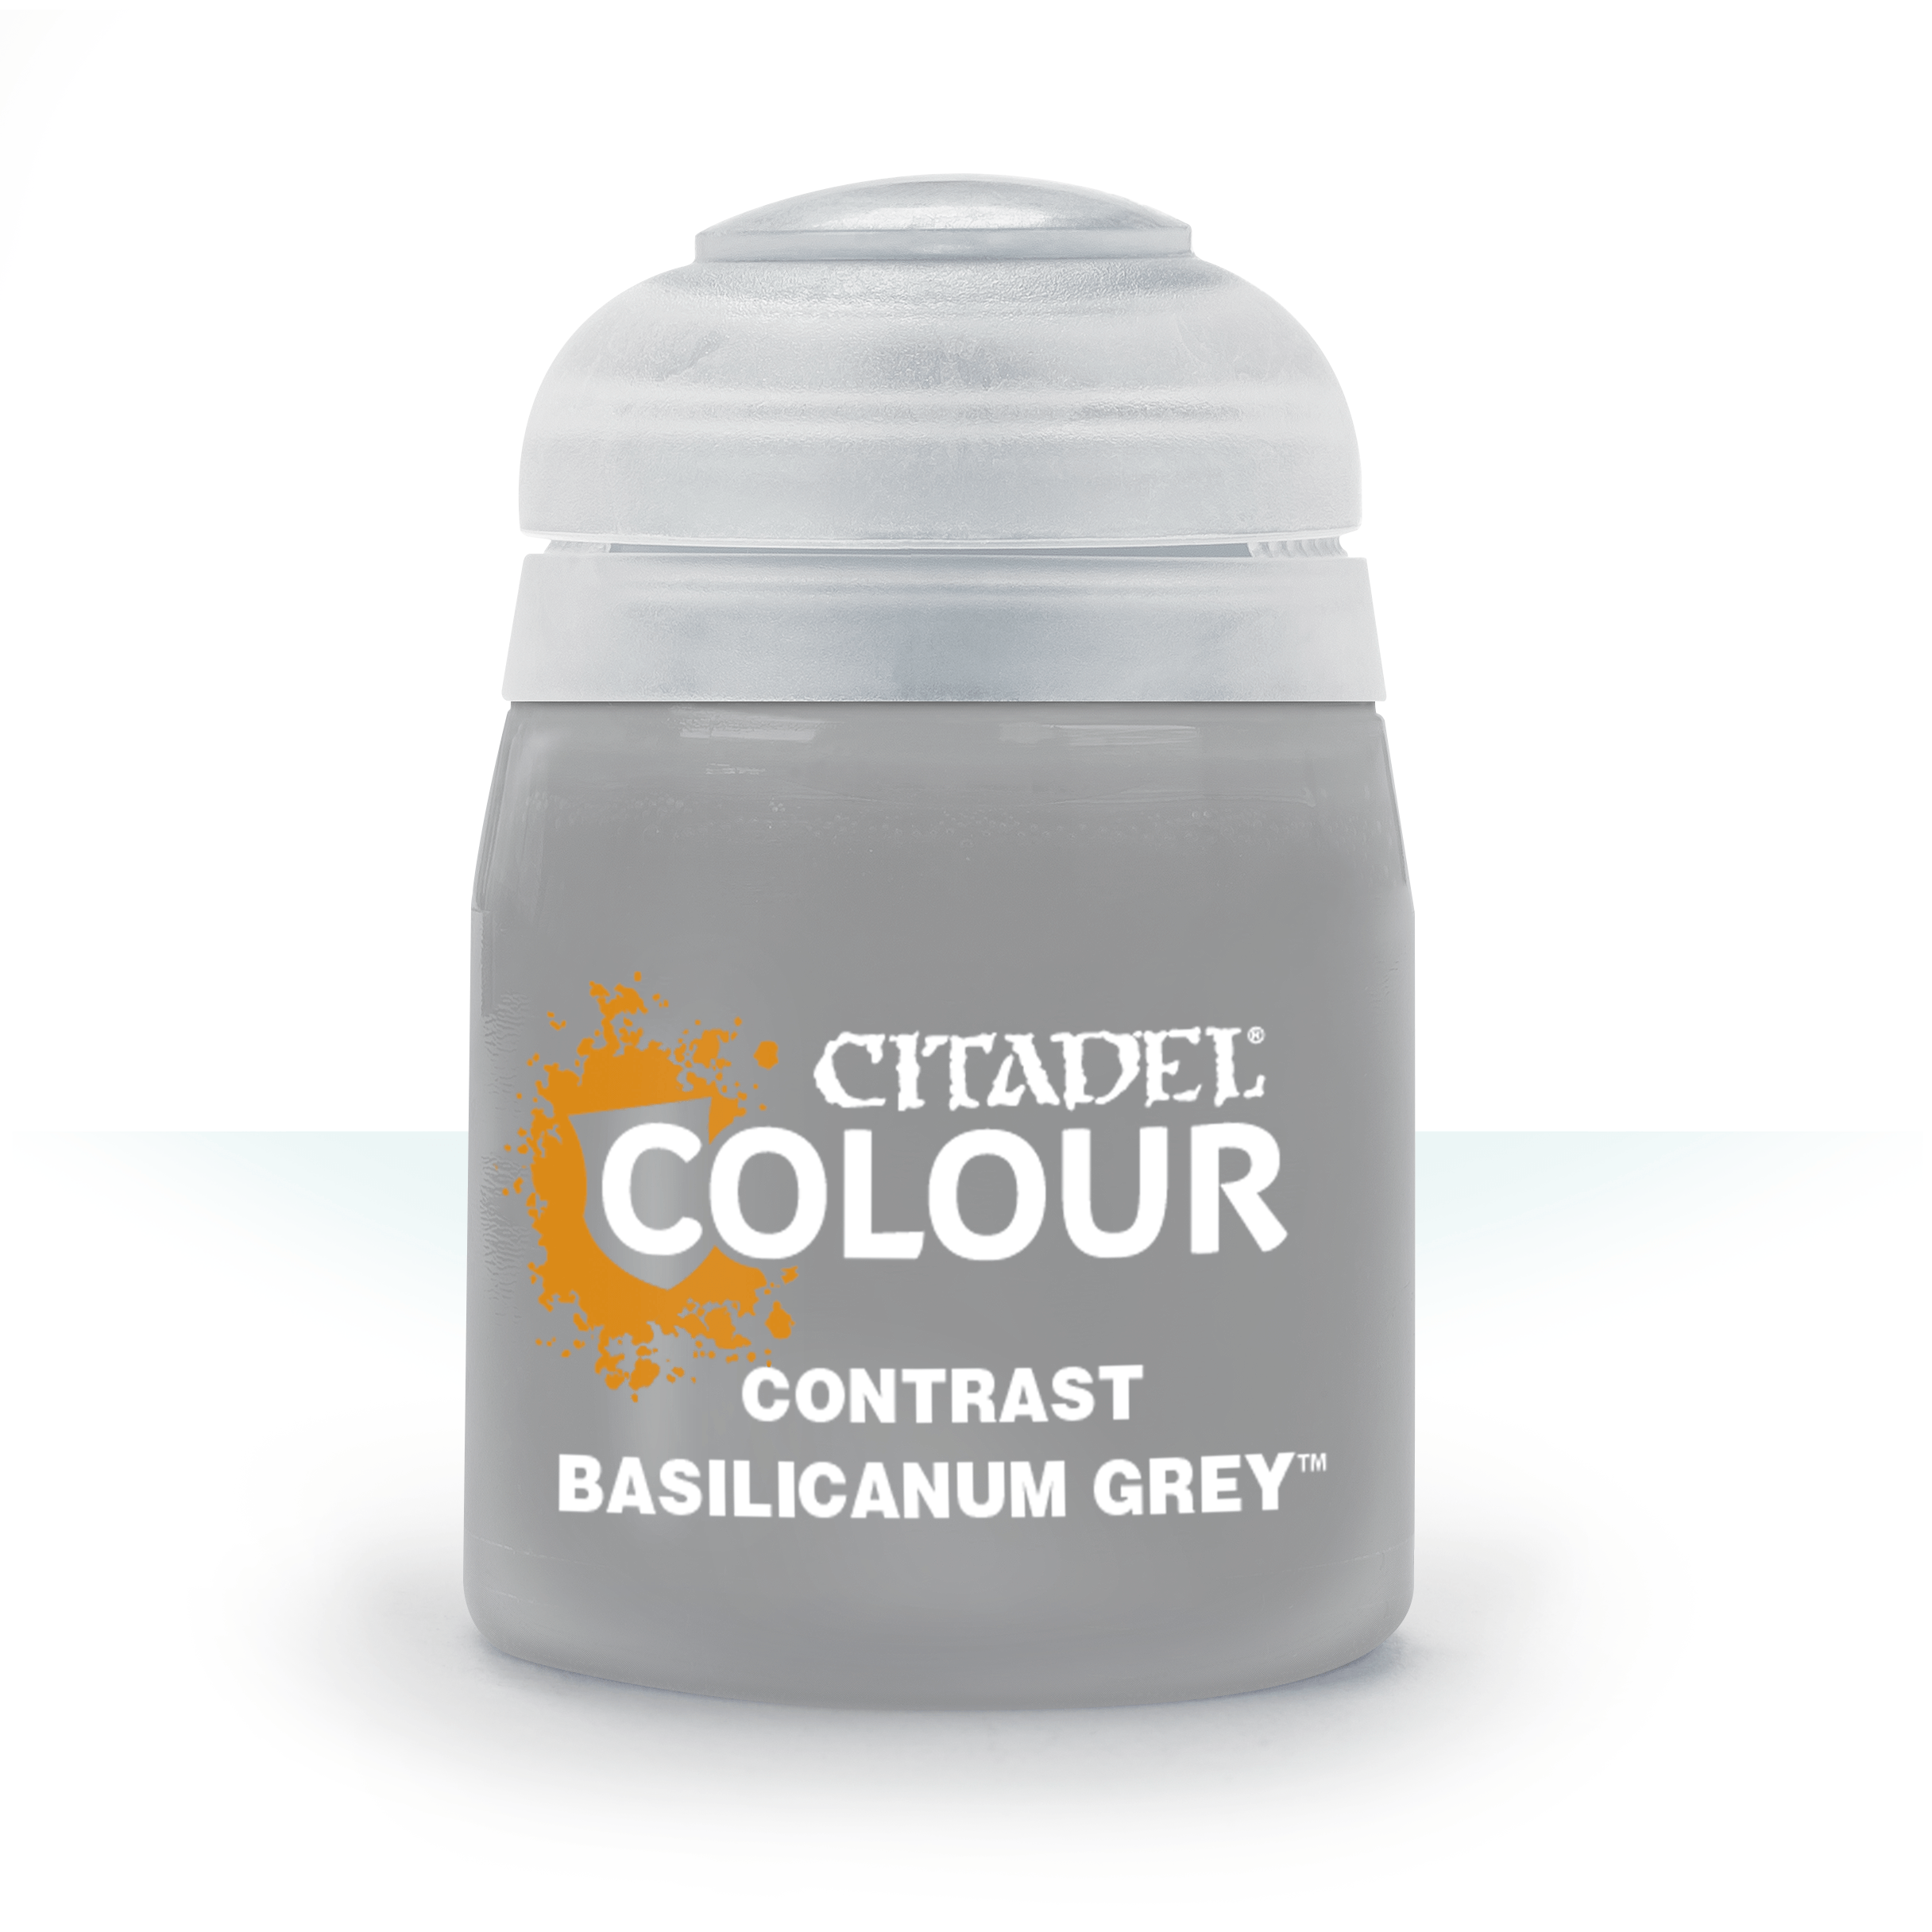 Basilicanum Grey - Citadel Contrast Colour